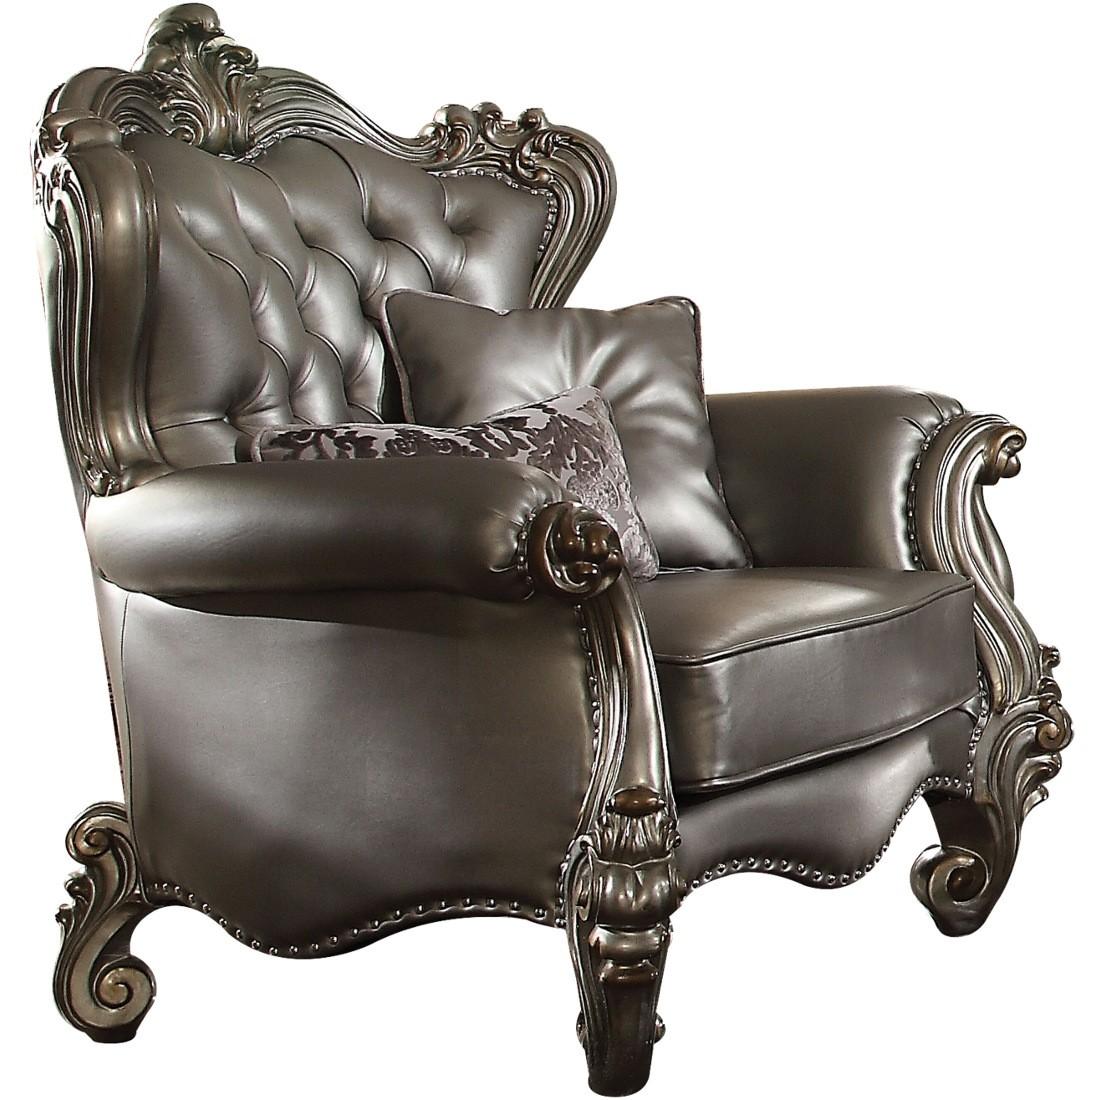 

        
Acme Furniture Versailles-56820 Sofa Set Platinum/Antique/Silver Faux Leather 0840412148682
